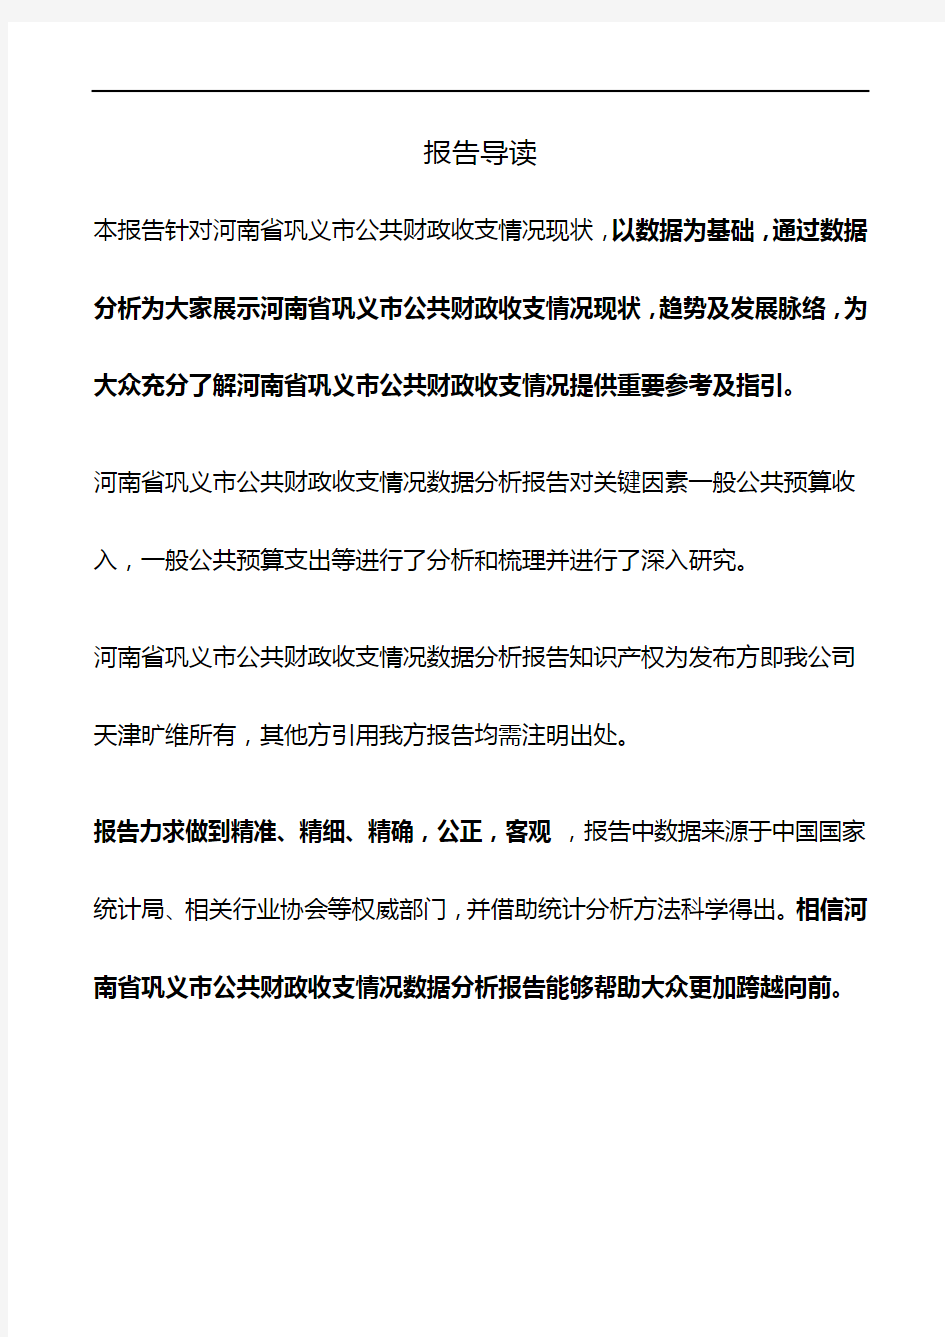 河南省巩义市公共财政收支情况3年数据分析报告2019版